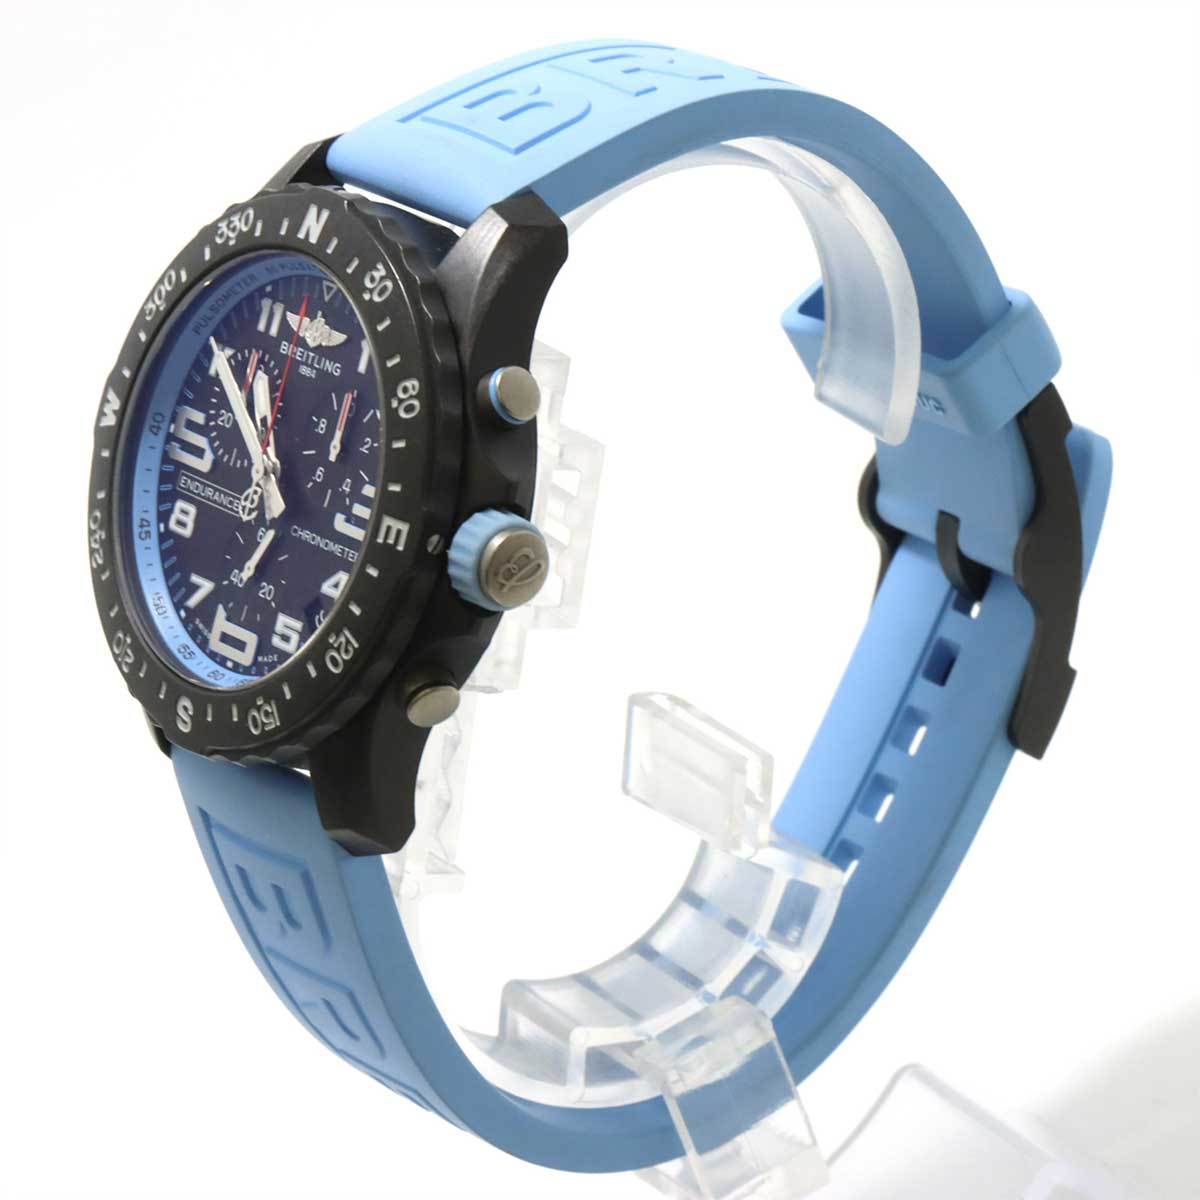  Breitling BREITLING Endurance Pro X82310 chronograph men's wristwatch Date quartz Endurance Pro 90224489